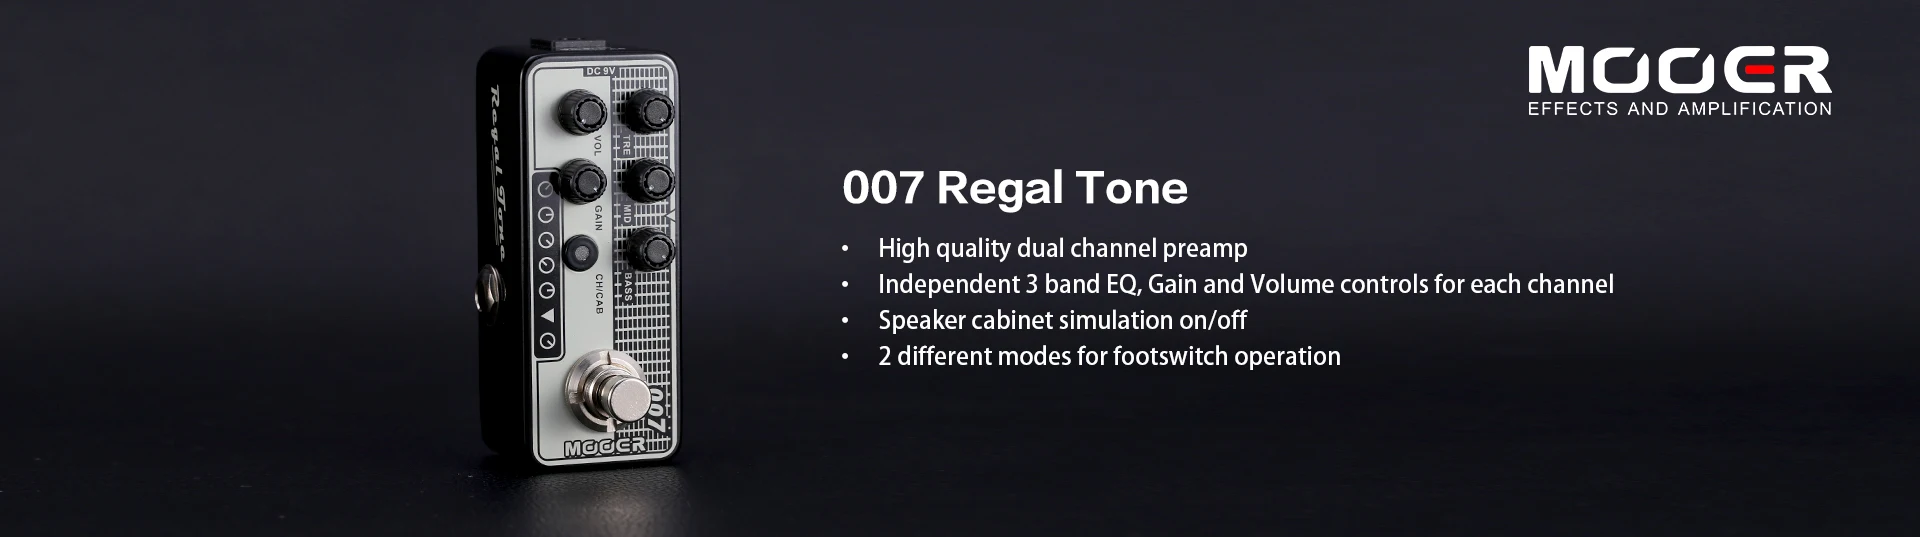 MOOER MICRO Series 007 Регал винтажный тон цифровой Предварительный усилитель гитары